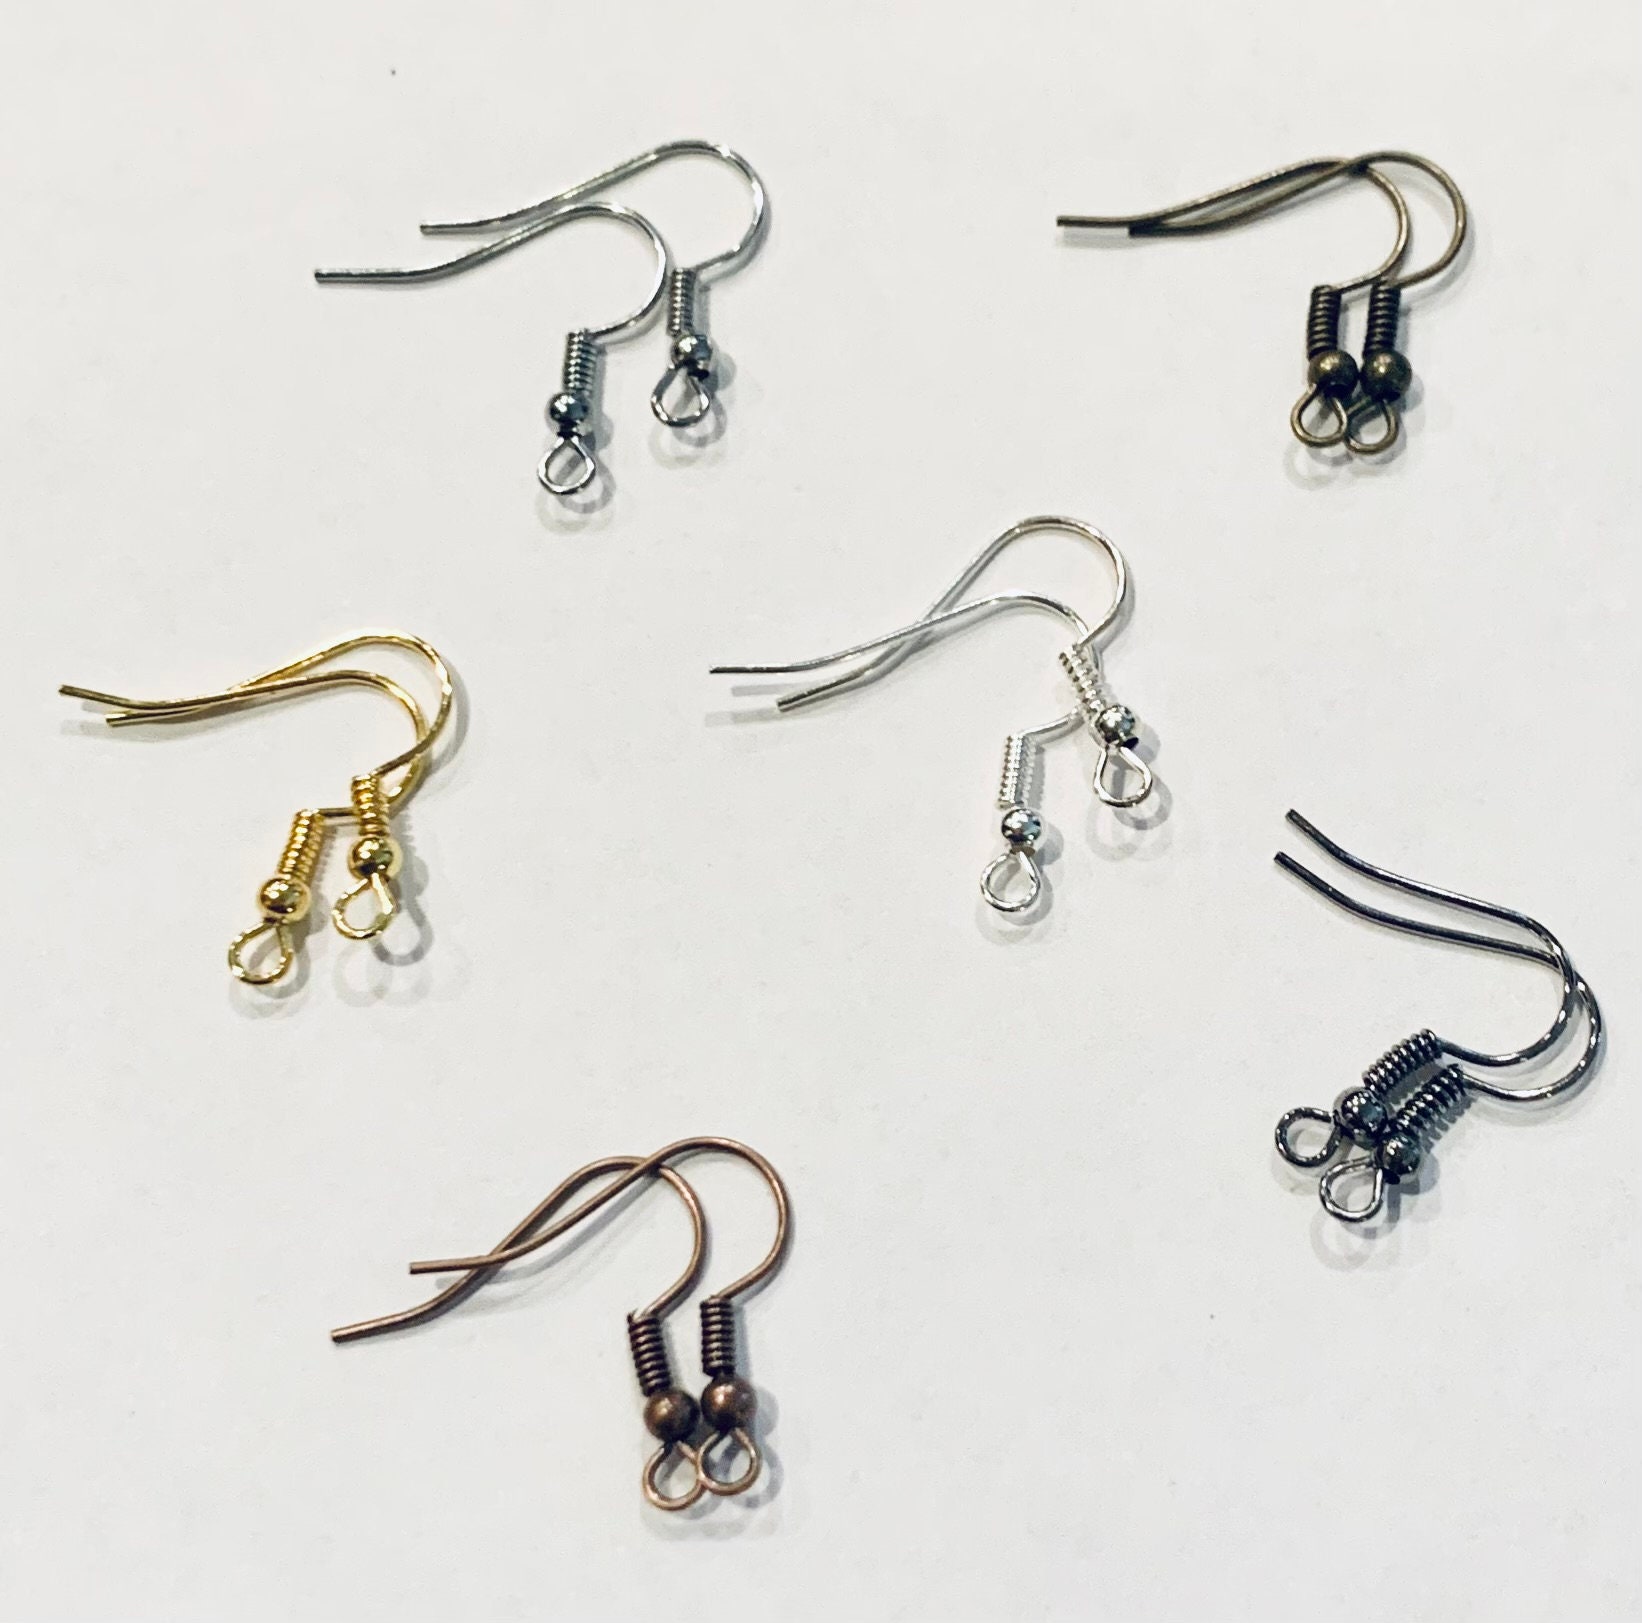 1200Pcs/box Earring Findings Set 15 Style Earring Backs Kit Earring Hooks  Studs Posts for Earring Making